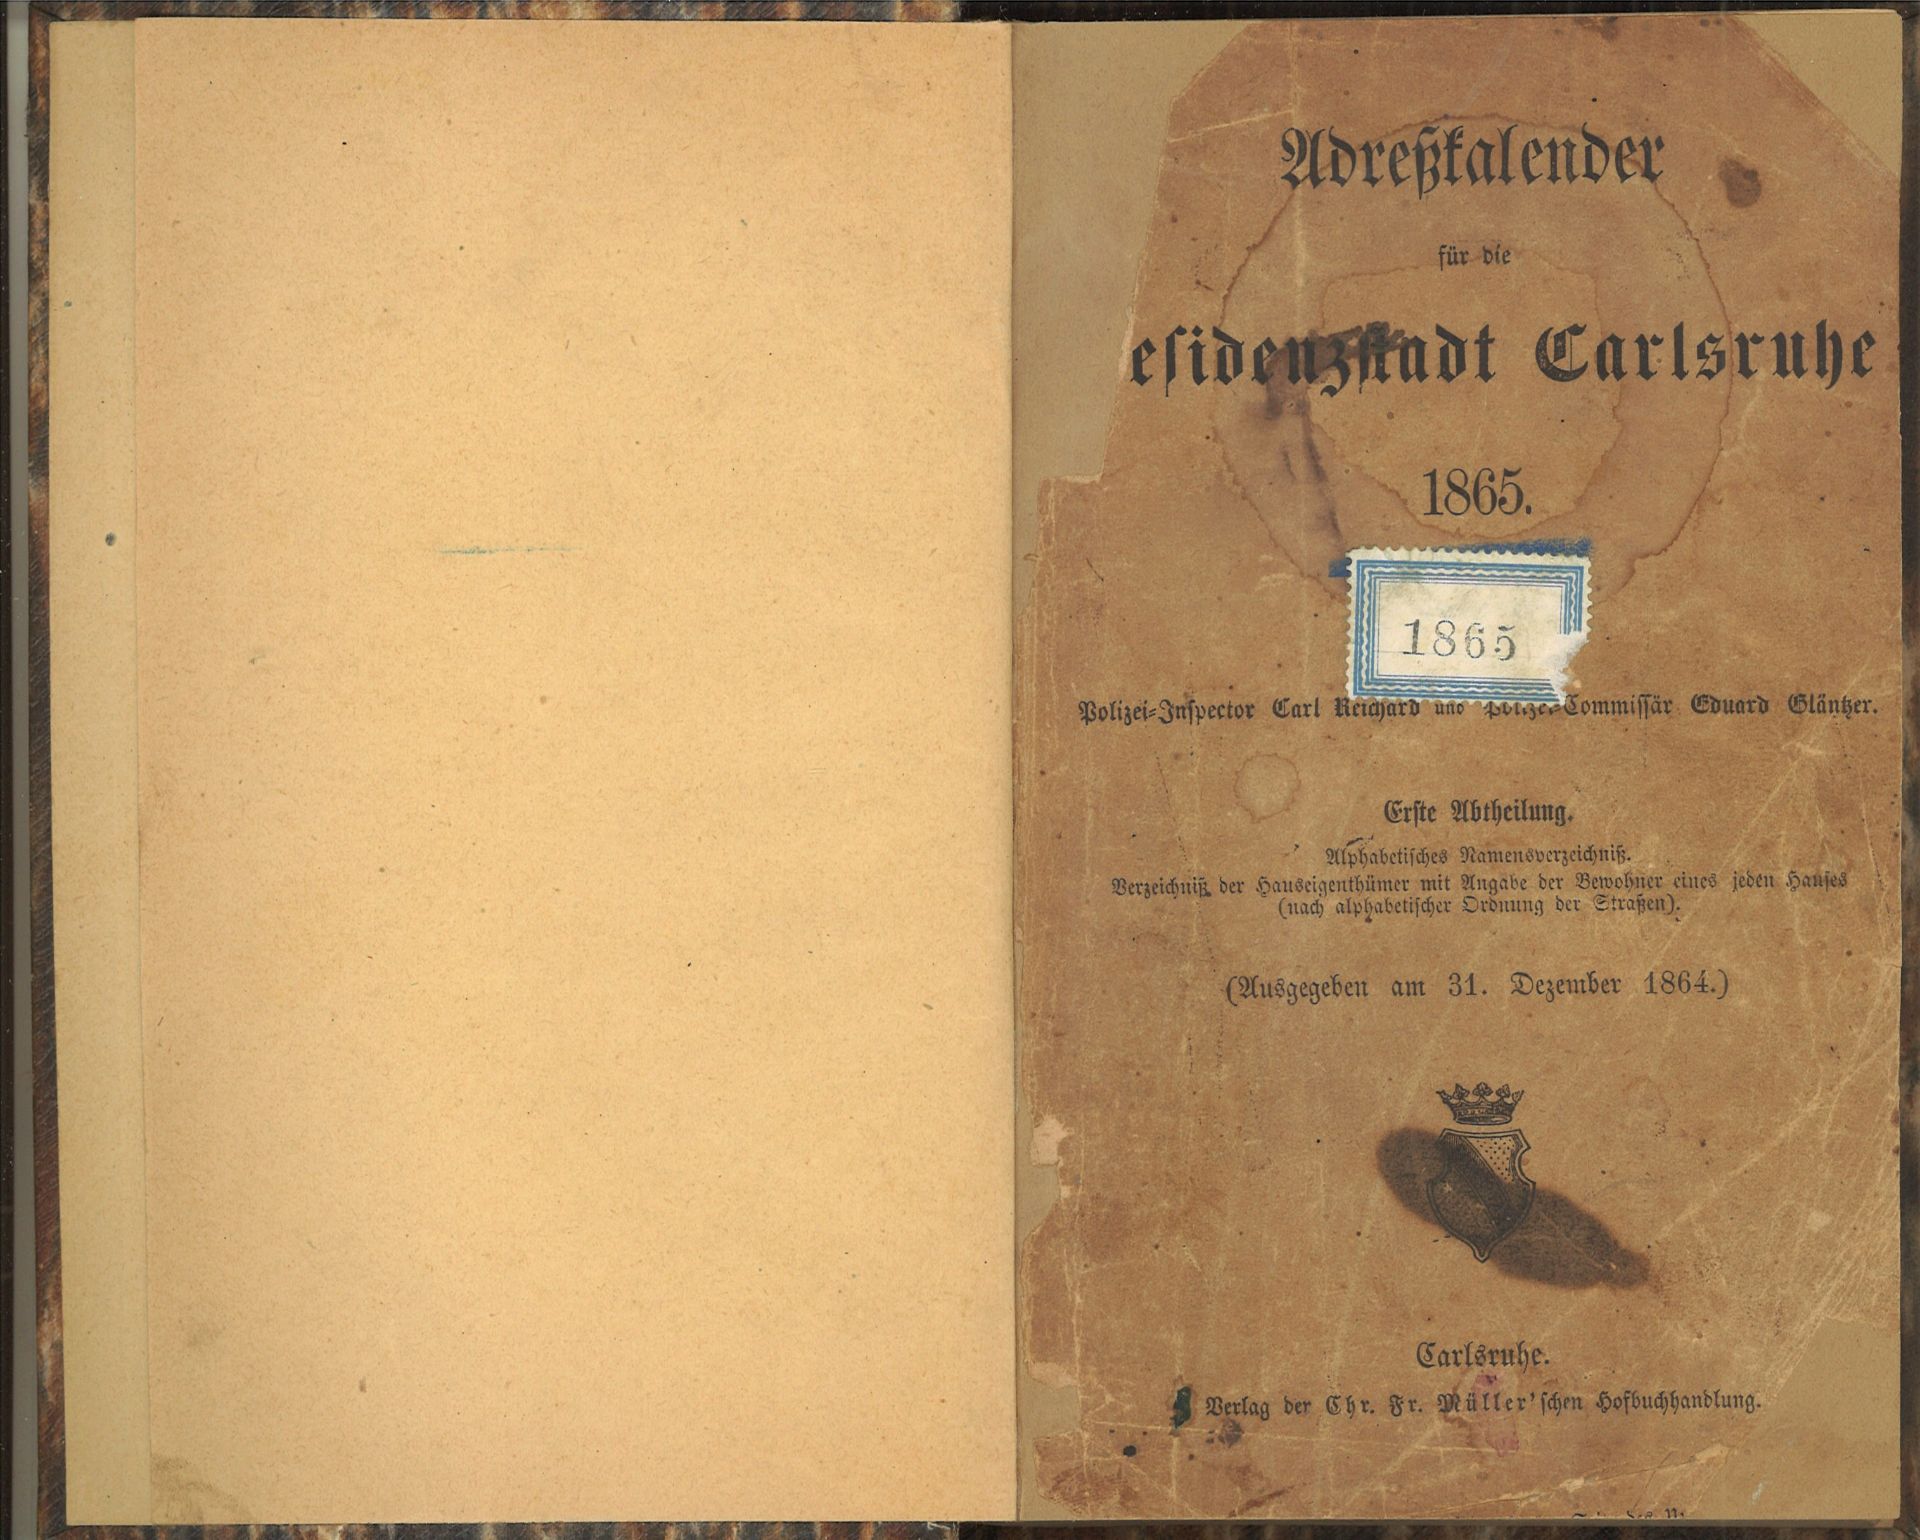 Adresskalender der Residenzstadt Carlsruhe 1865, Polizei-Inspektor Carl Reichard und Plizei-